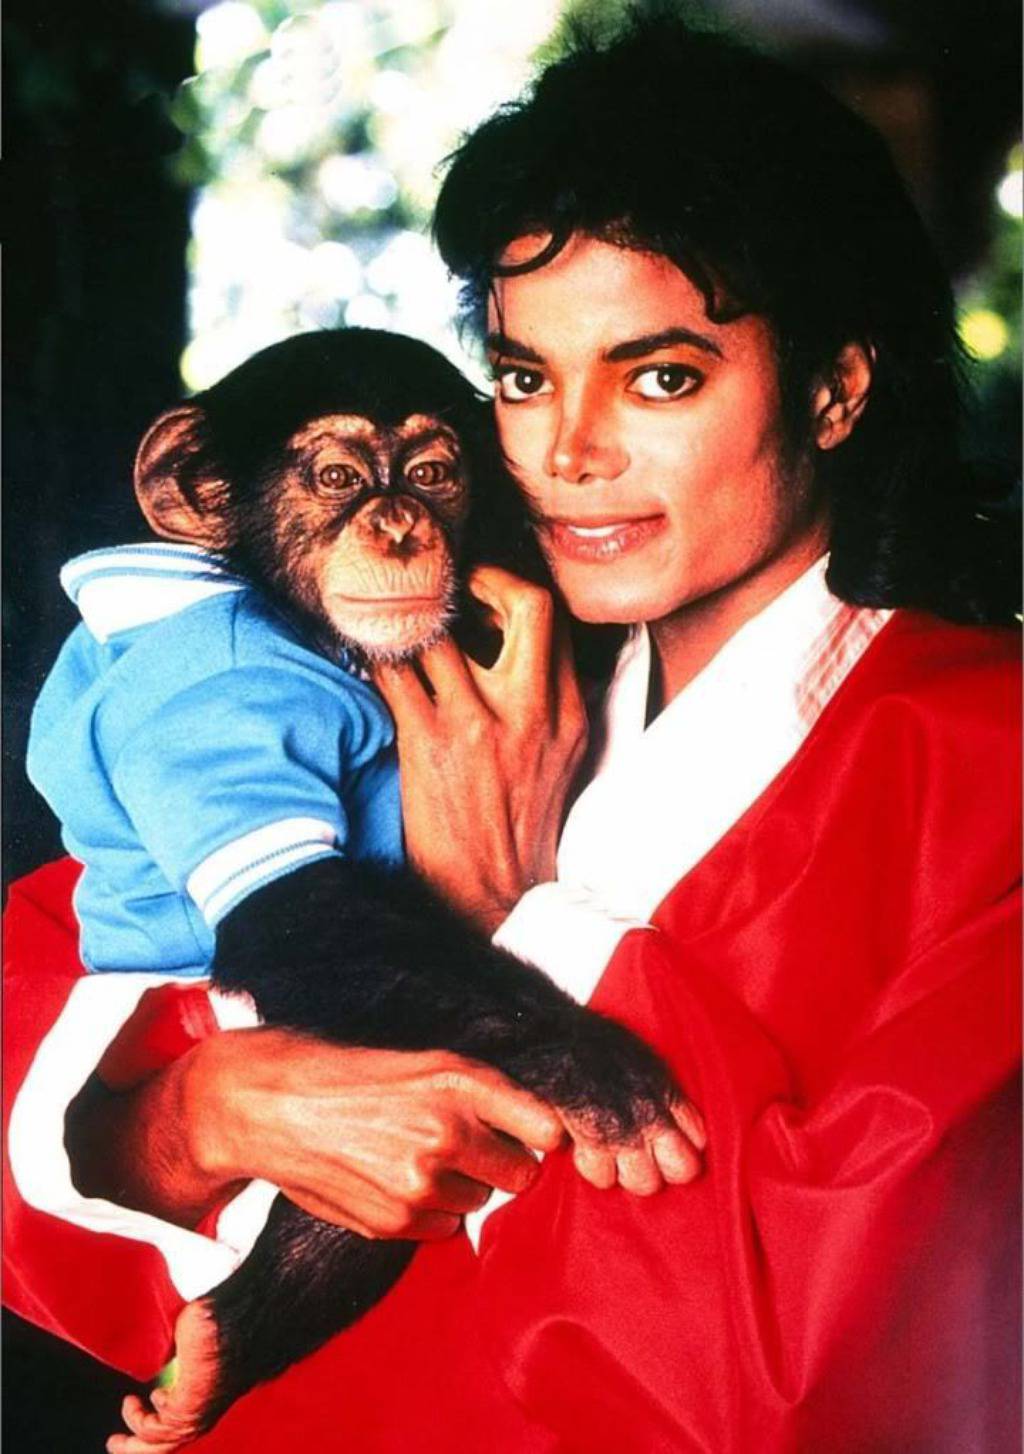 Pokojni Jackson vjerovao je samo majmunčiću Bubblesu